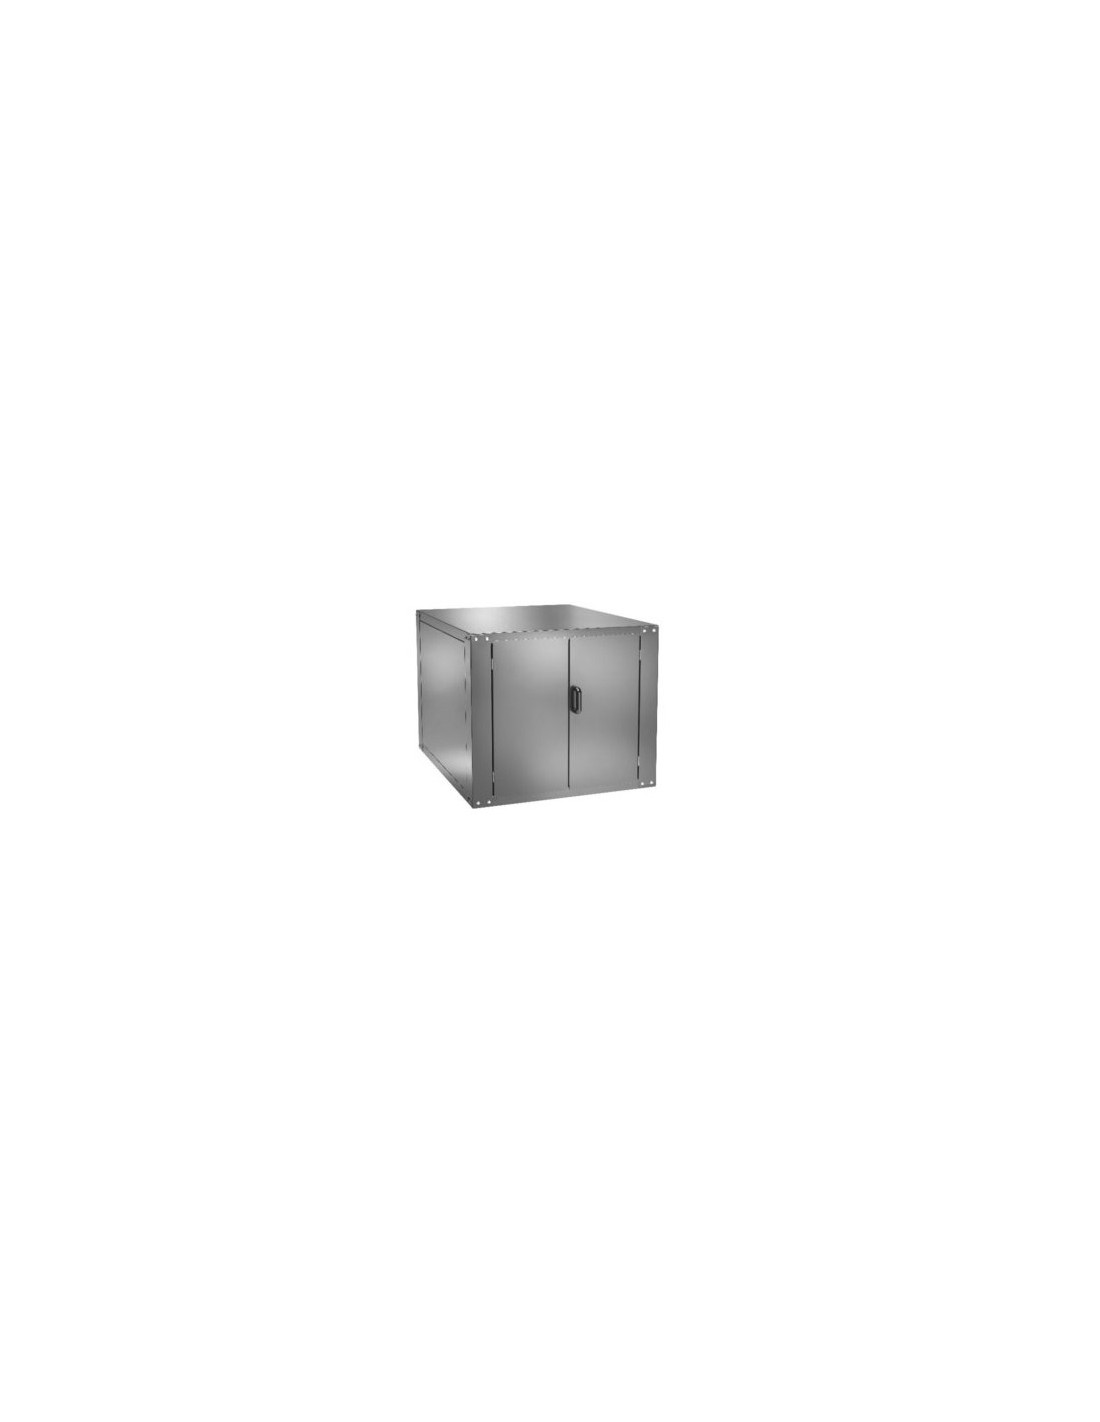 Cella lievitazione per forno mod. FMLDW6+6 - Capacità  n. 9 teglie - Potenza 50÷90°C - Potenza kW 1.1 - Dimensioni cm 137 x 85.5